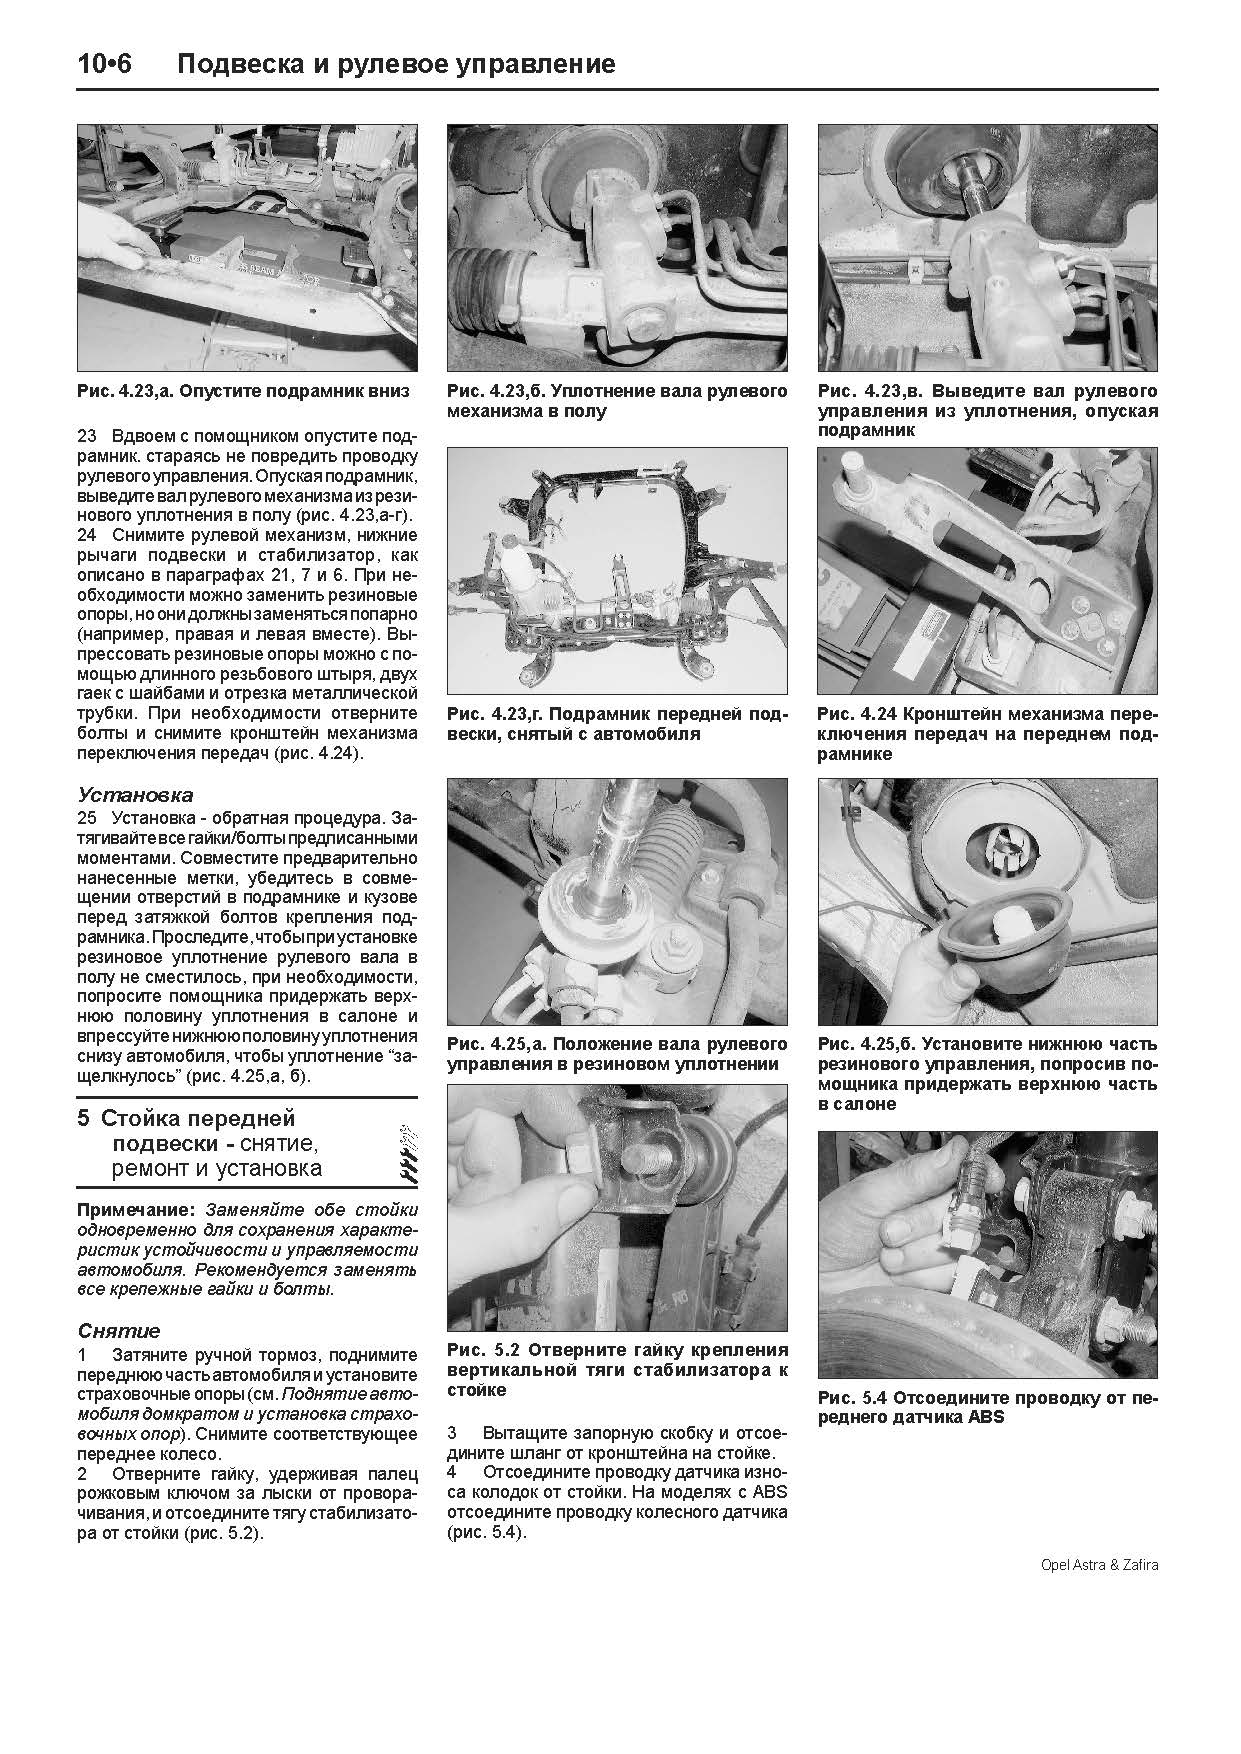 Книга Opel Astra, Zafira 1998-2005 дизель, электросхемы, ч/б фото, каталог з/ч. Руководство по ремонту и эксплуатации автомобиля. Легион-Aвтодата